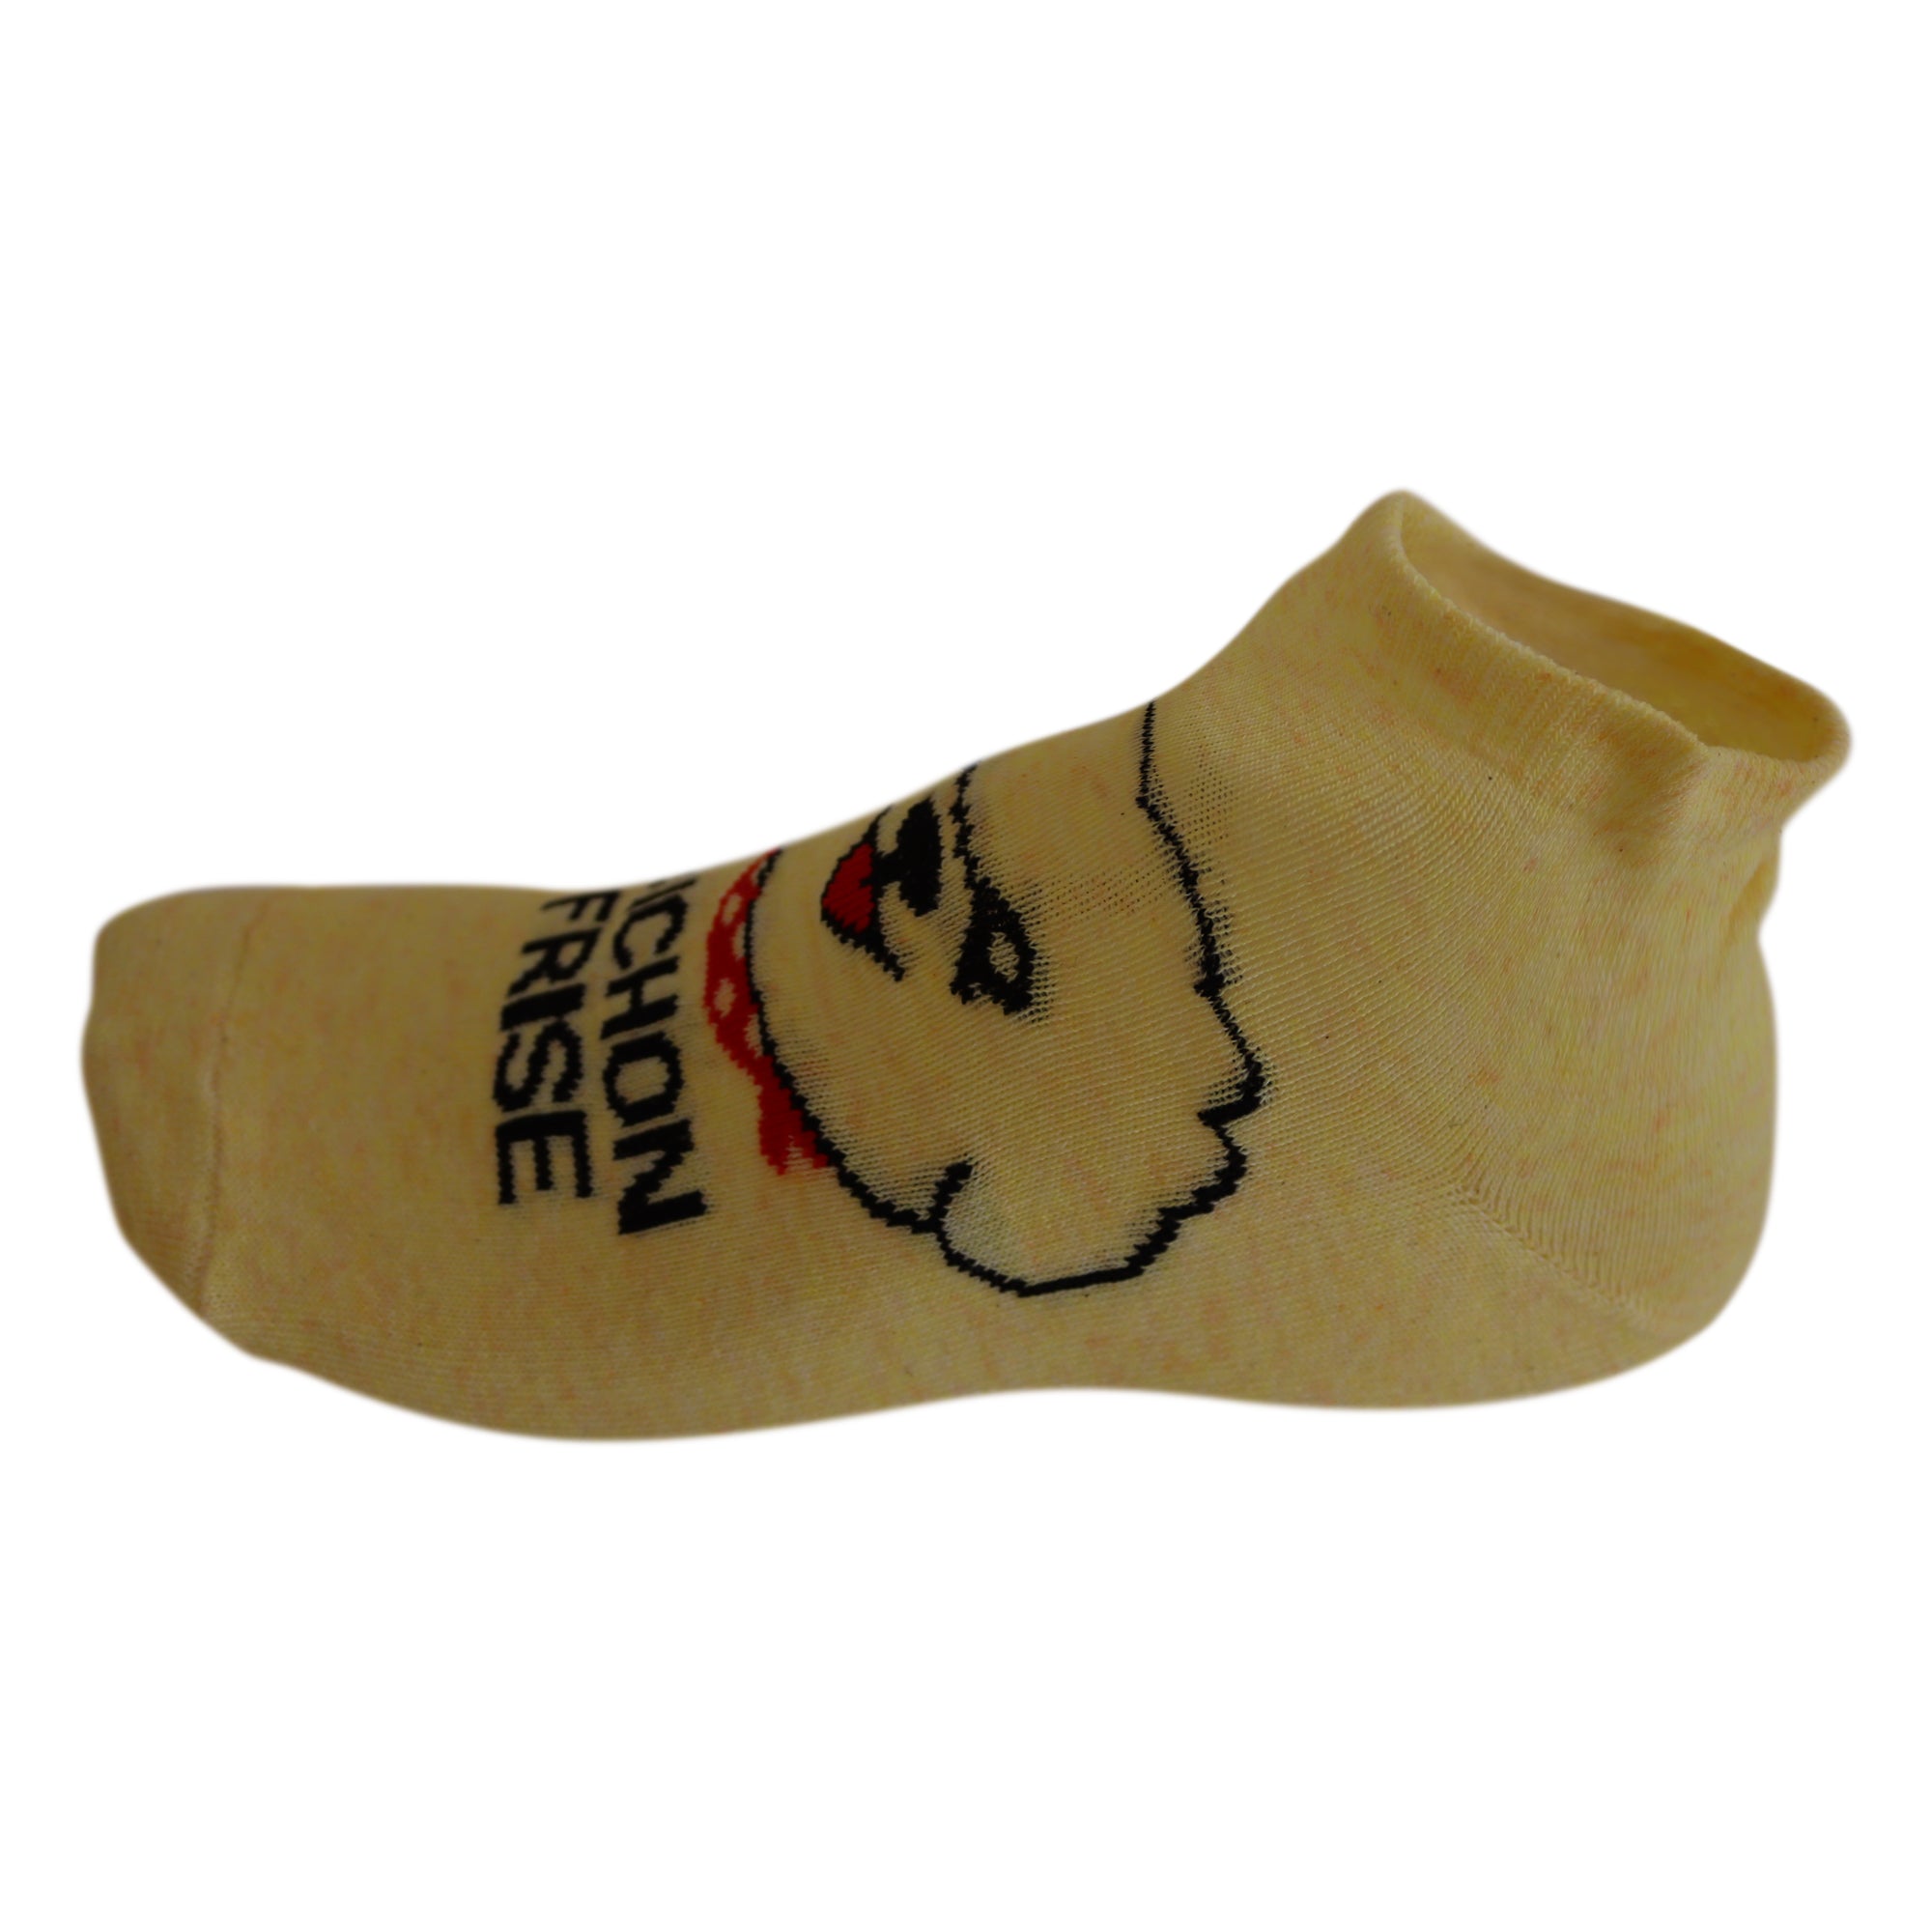 Louluu Women Cute Bichon Frise Lovely Casual Dog Socks Low Cut